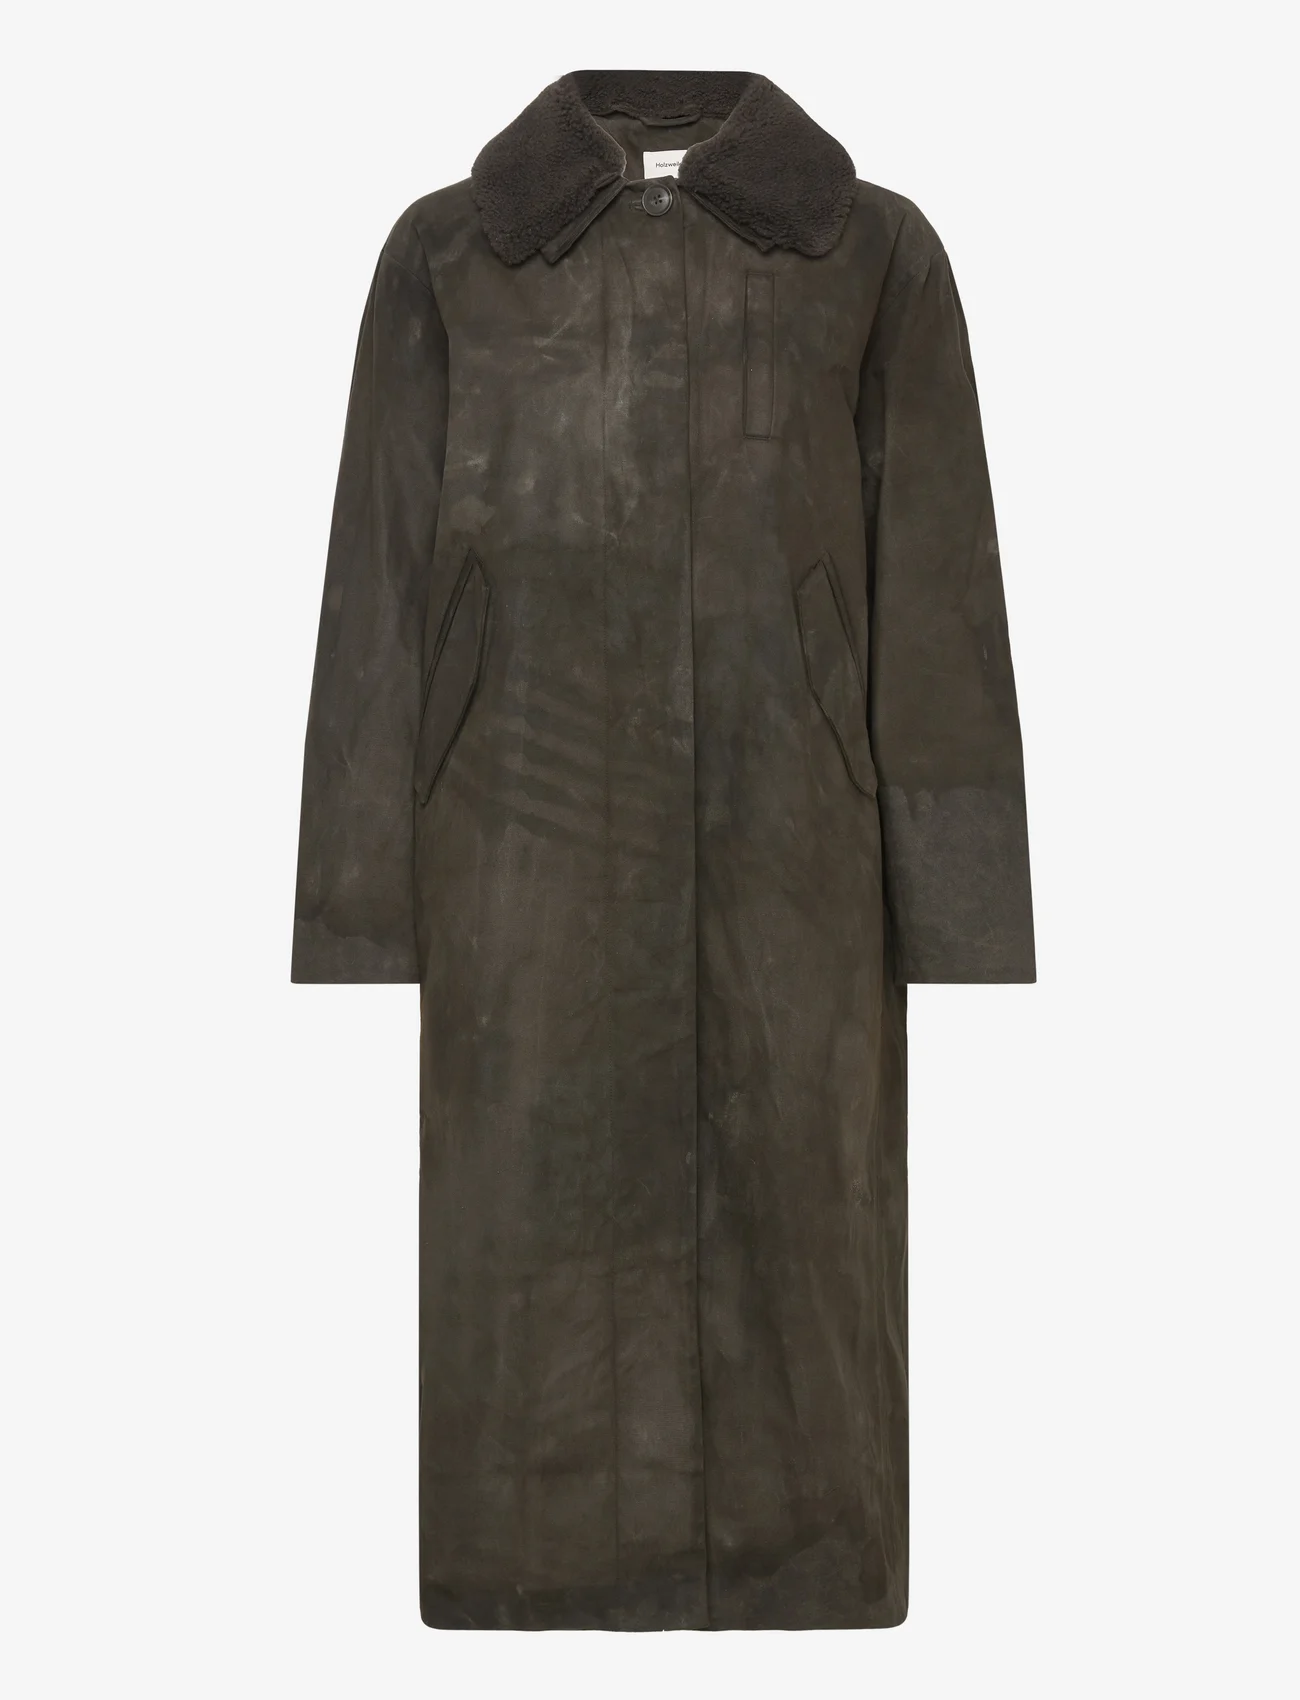 HOLZWEILER - Diana Long Coat - winter coats - dk. green - 0